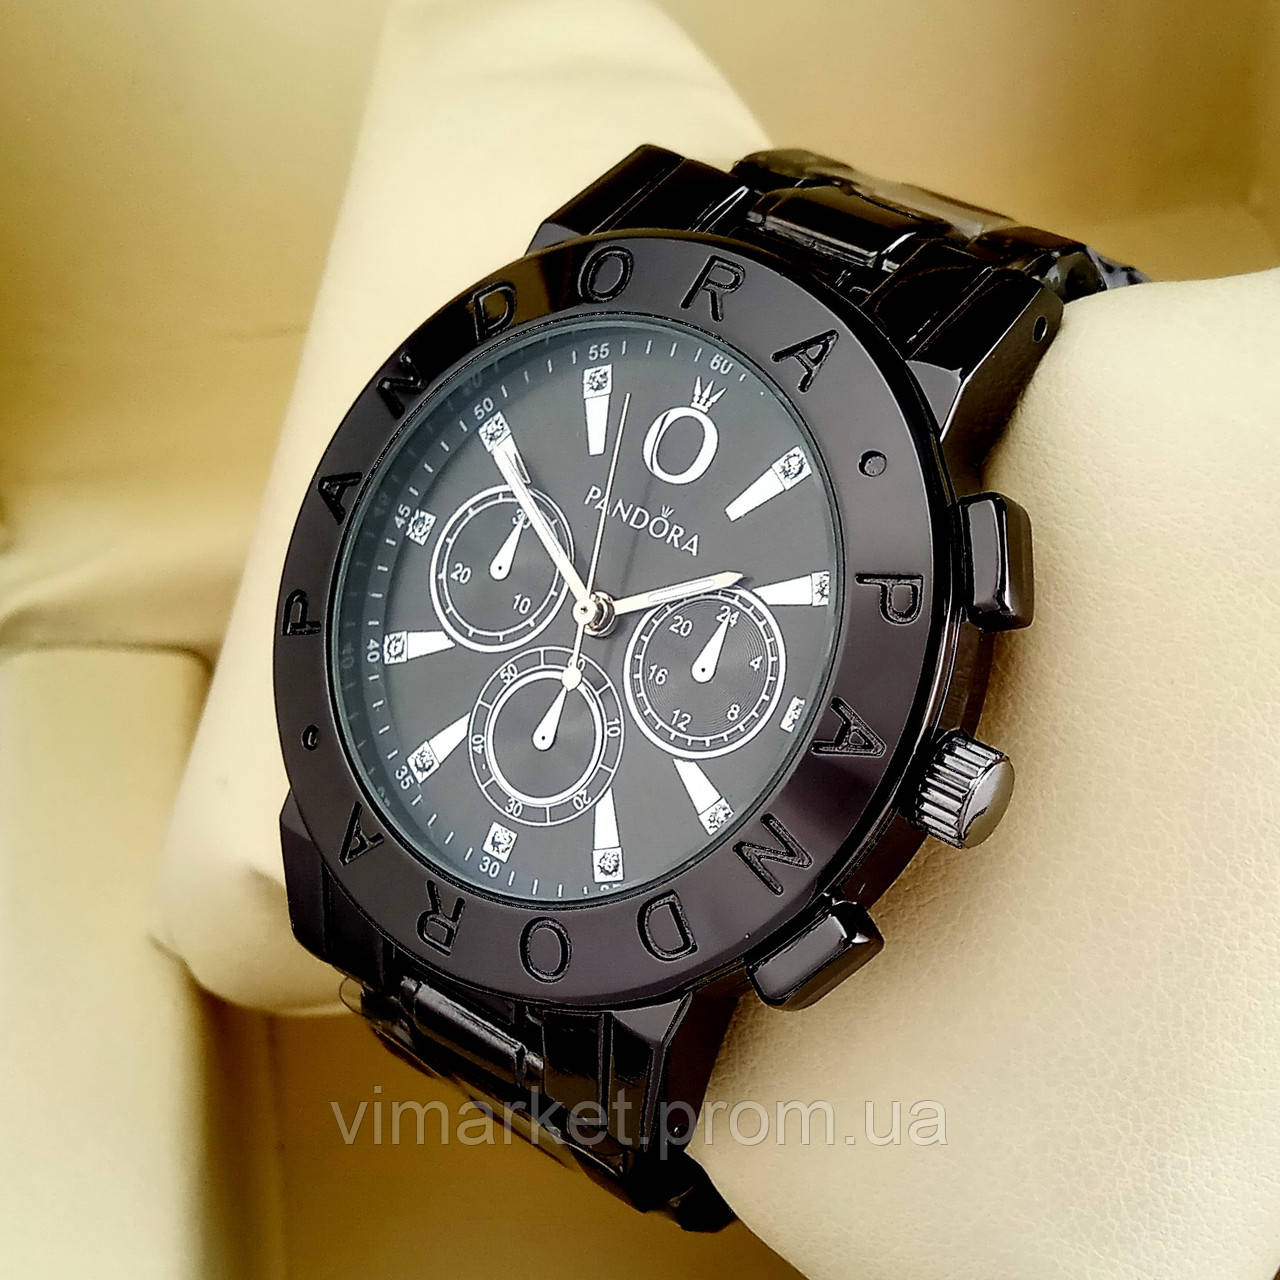 Жіночі кварцові наручні годинники Pandora 7289 чорного кольору з чорним циферблатом на металевому браслеті